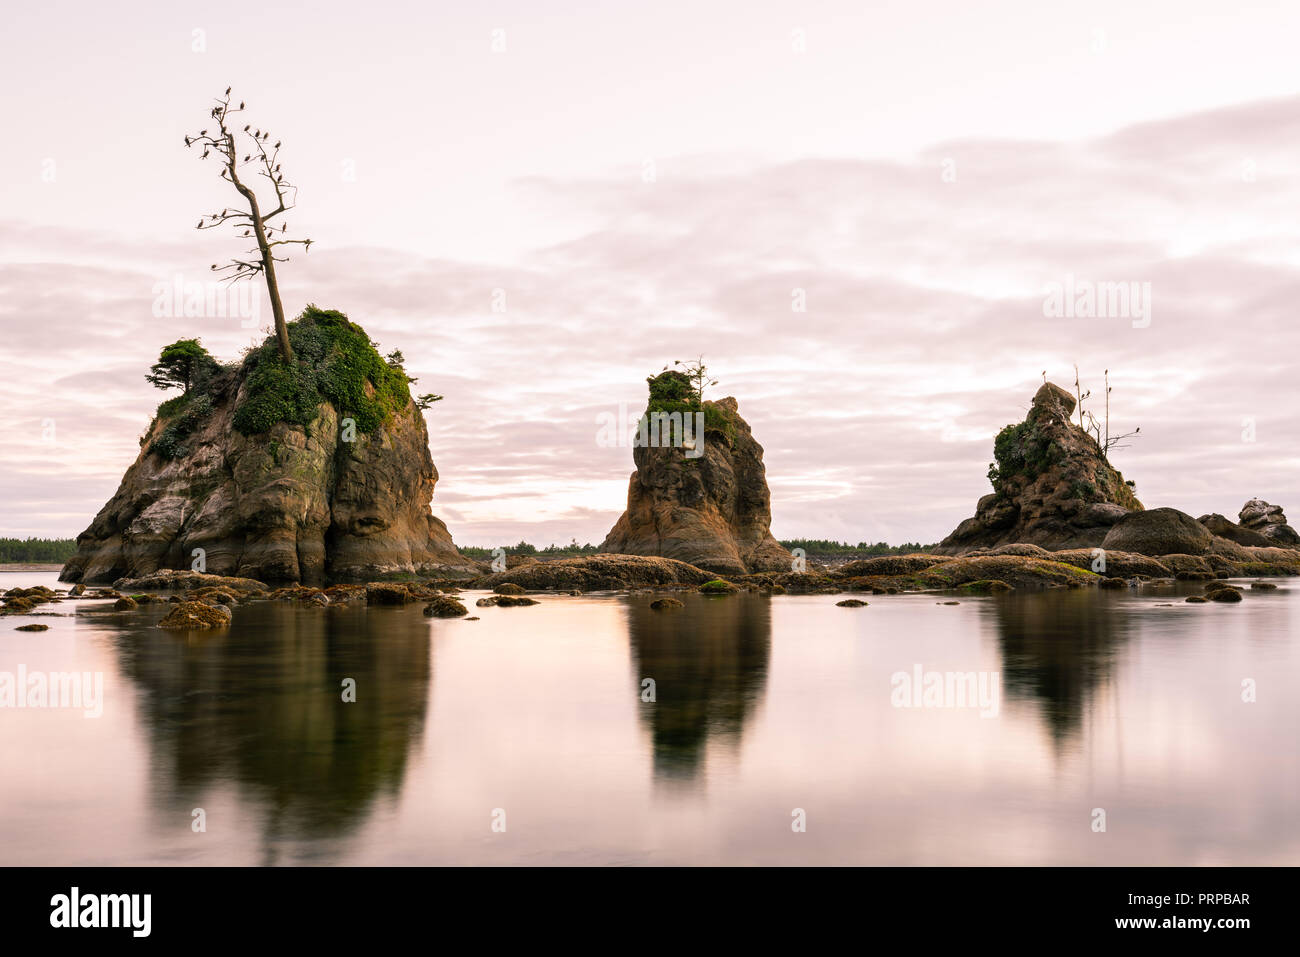 Le formazioni rocciose sporgenti dell'acqua a Tillamook bay, Oregon. Cormorano uccelli nidificano sugli alberi. Foto Stock